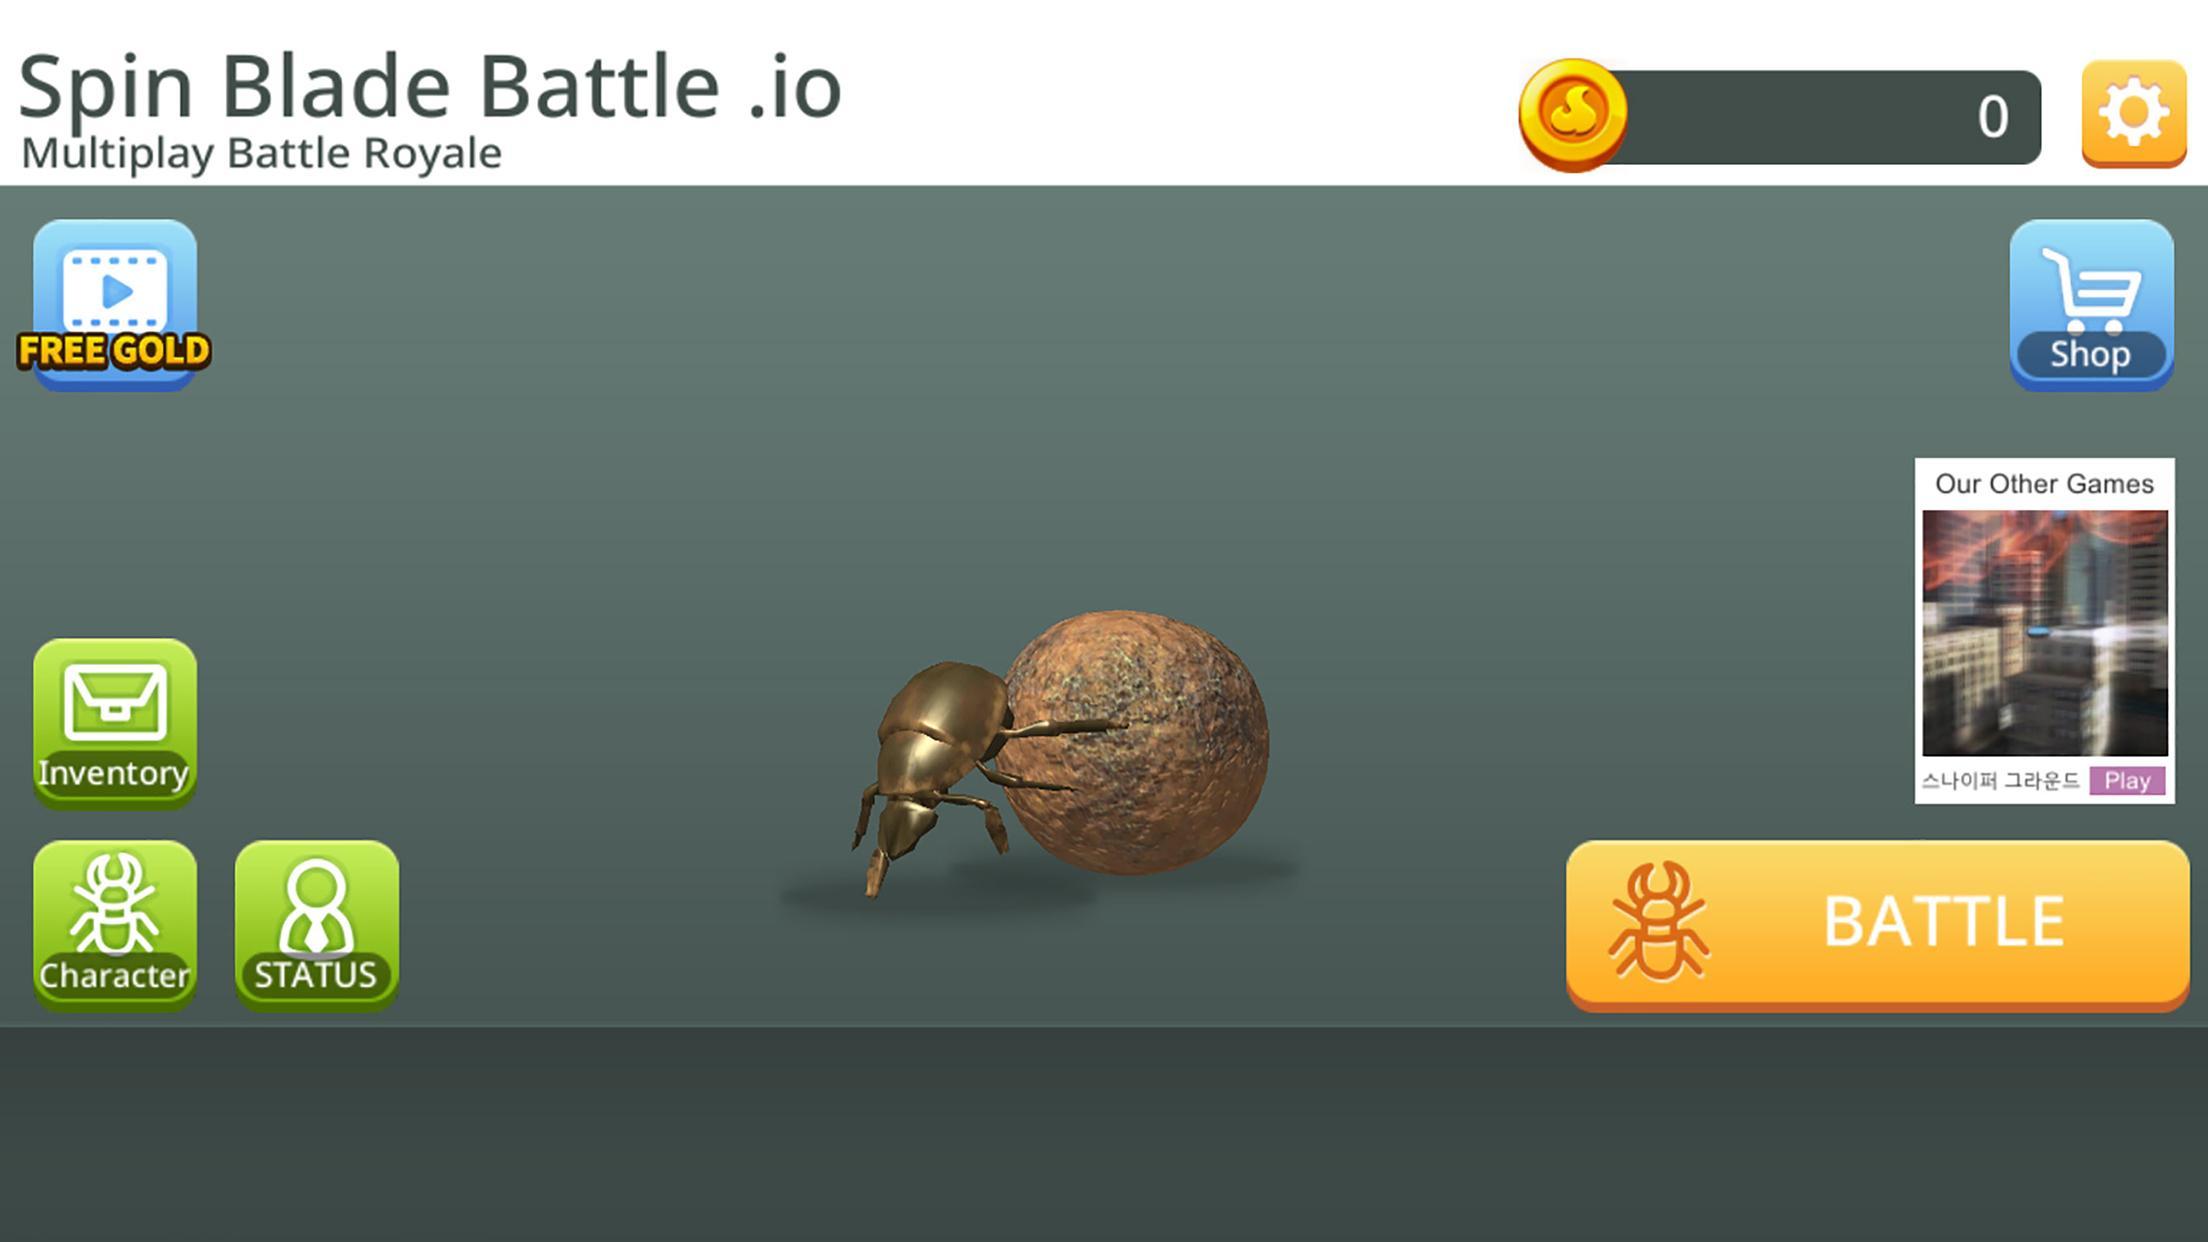 Screenshot 1 of ESCARABAJO EXPEDIENTE .io - Battle Royale multijugador 0.5.0